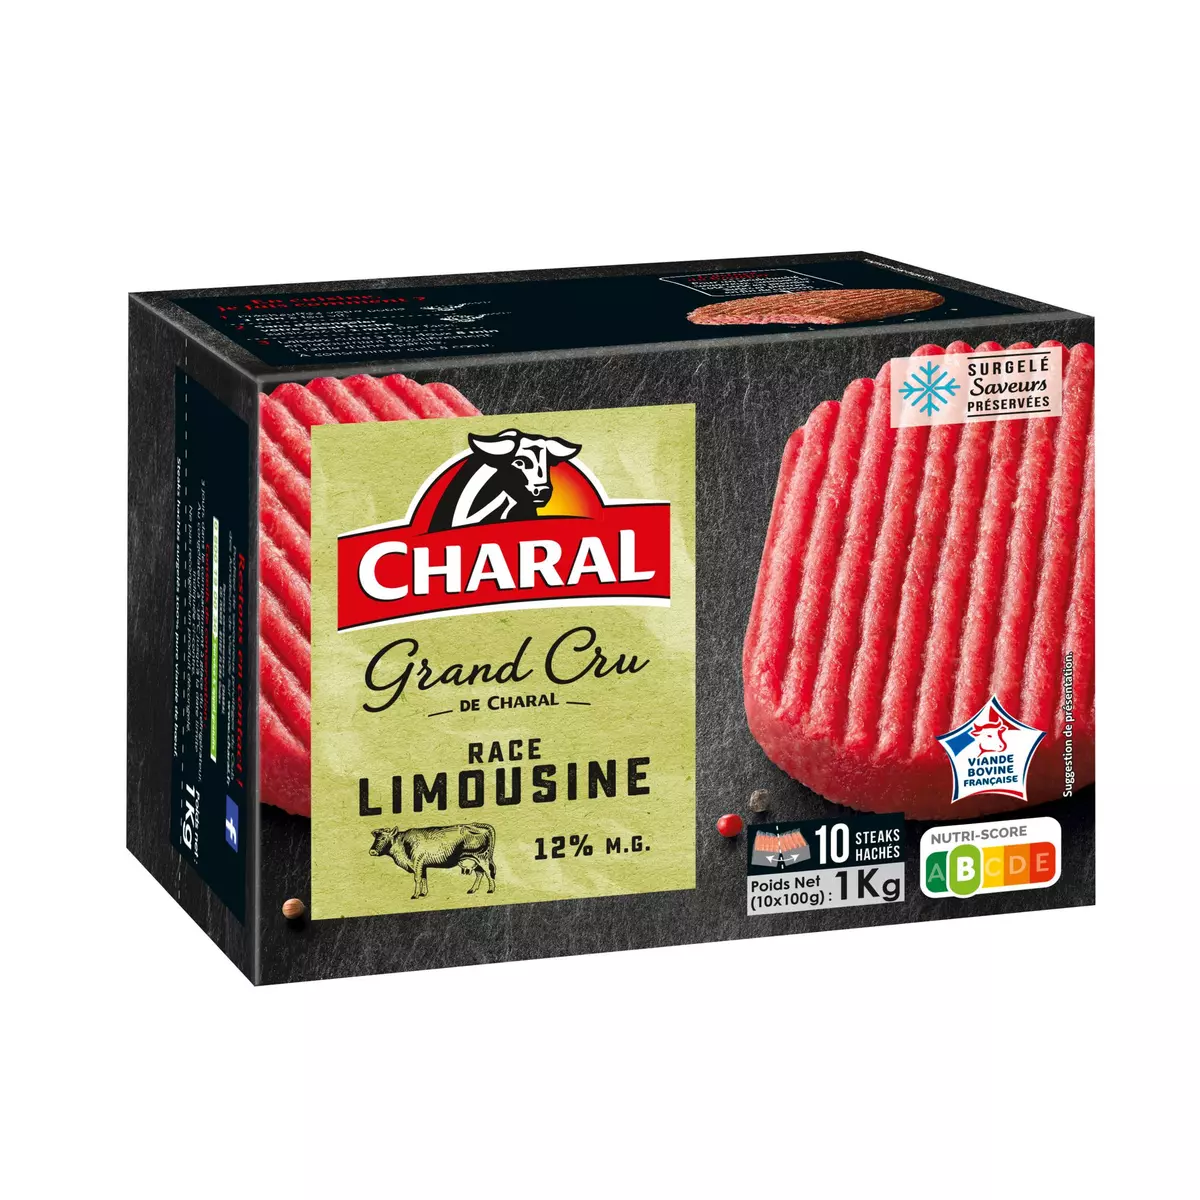 CHARAL Steak haché grand cru race Limousine 12%MG 10 pièces 1kg